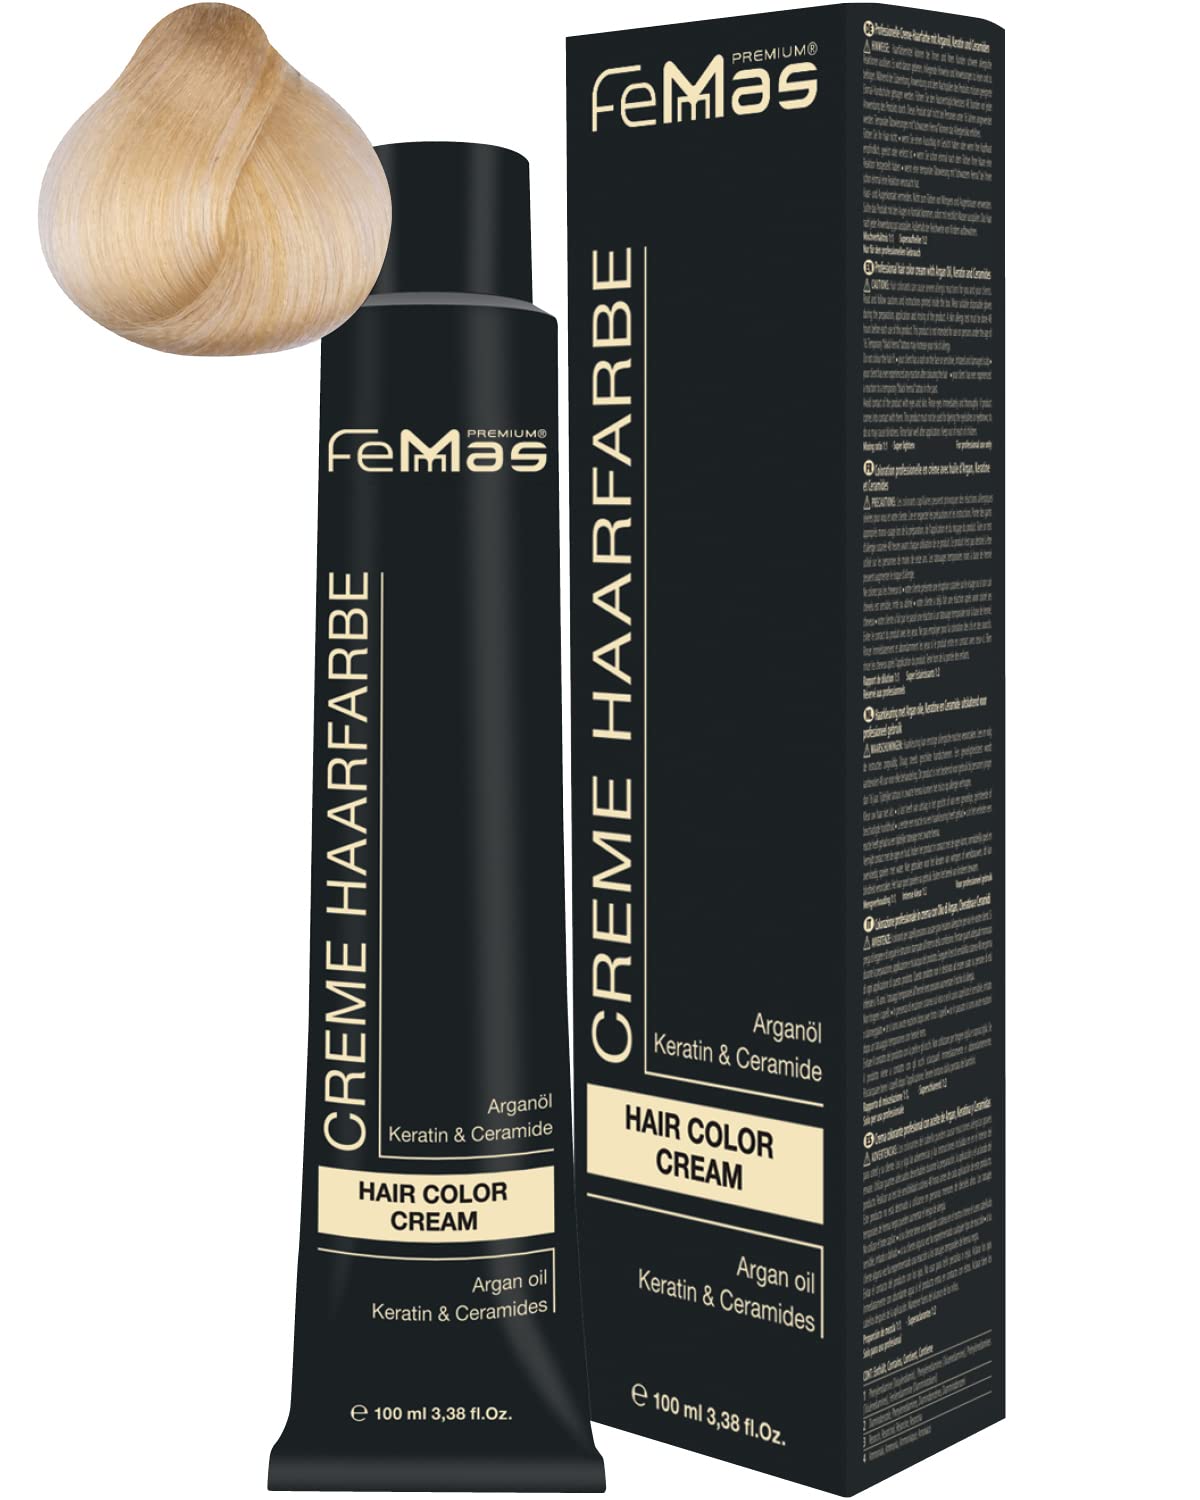 Femmas Hair Colour Cream, 100 ml Hair Colour with Argan Oil, Keratin & Ceramide (Platinum Blonde Gold 11.3), 11.3 ‎platinum